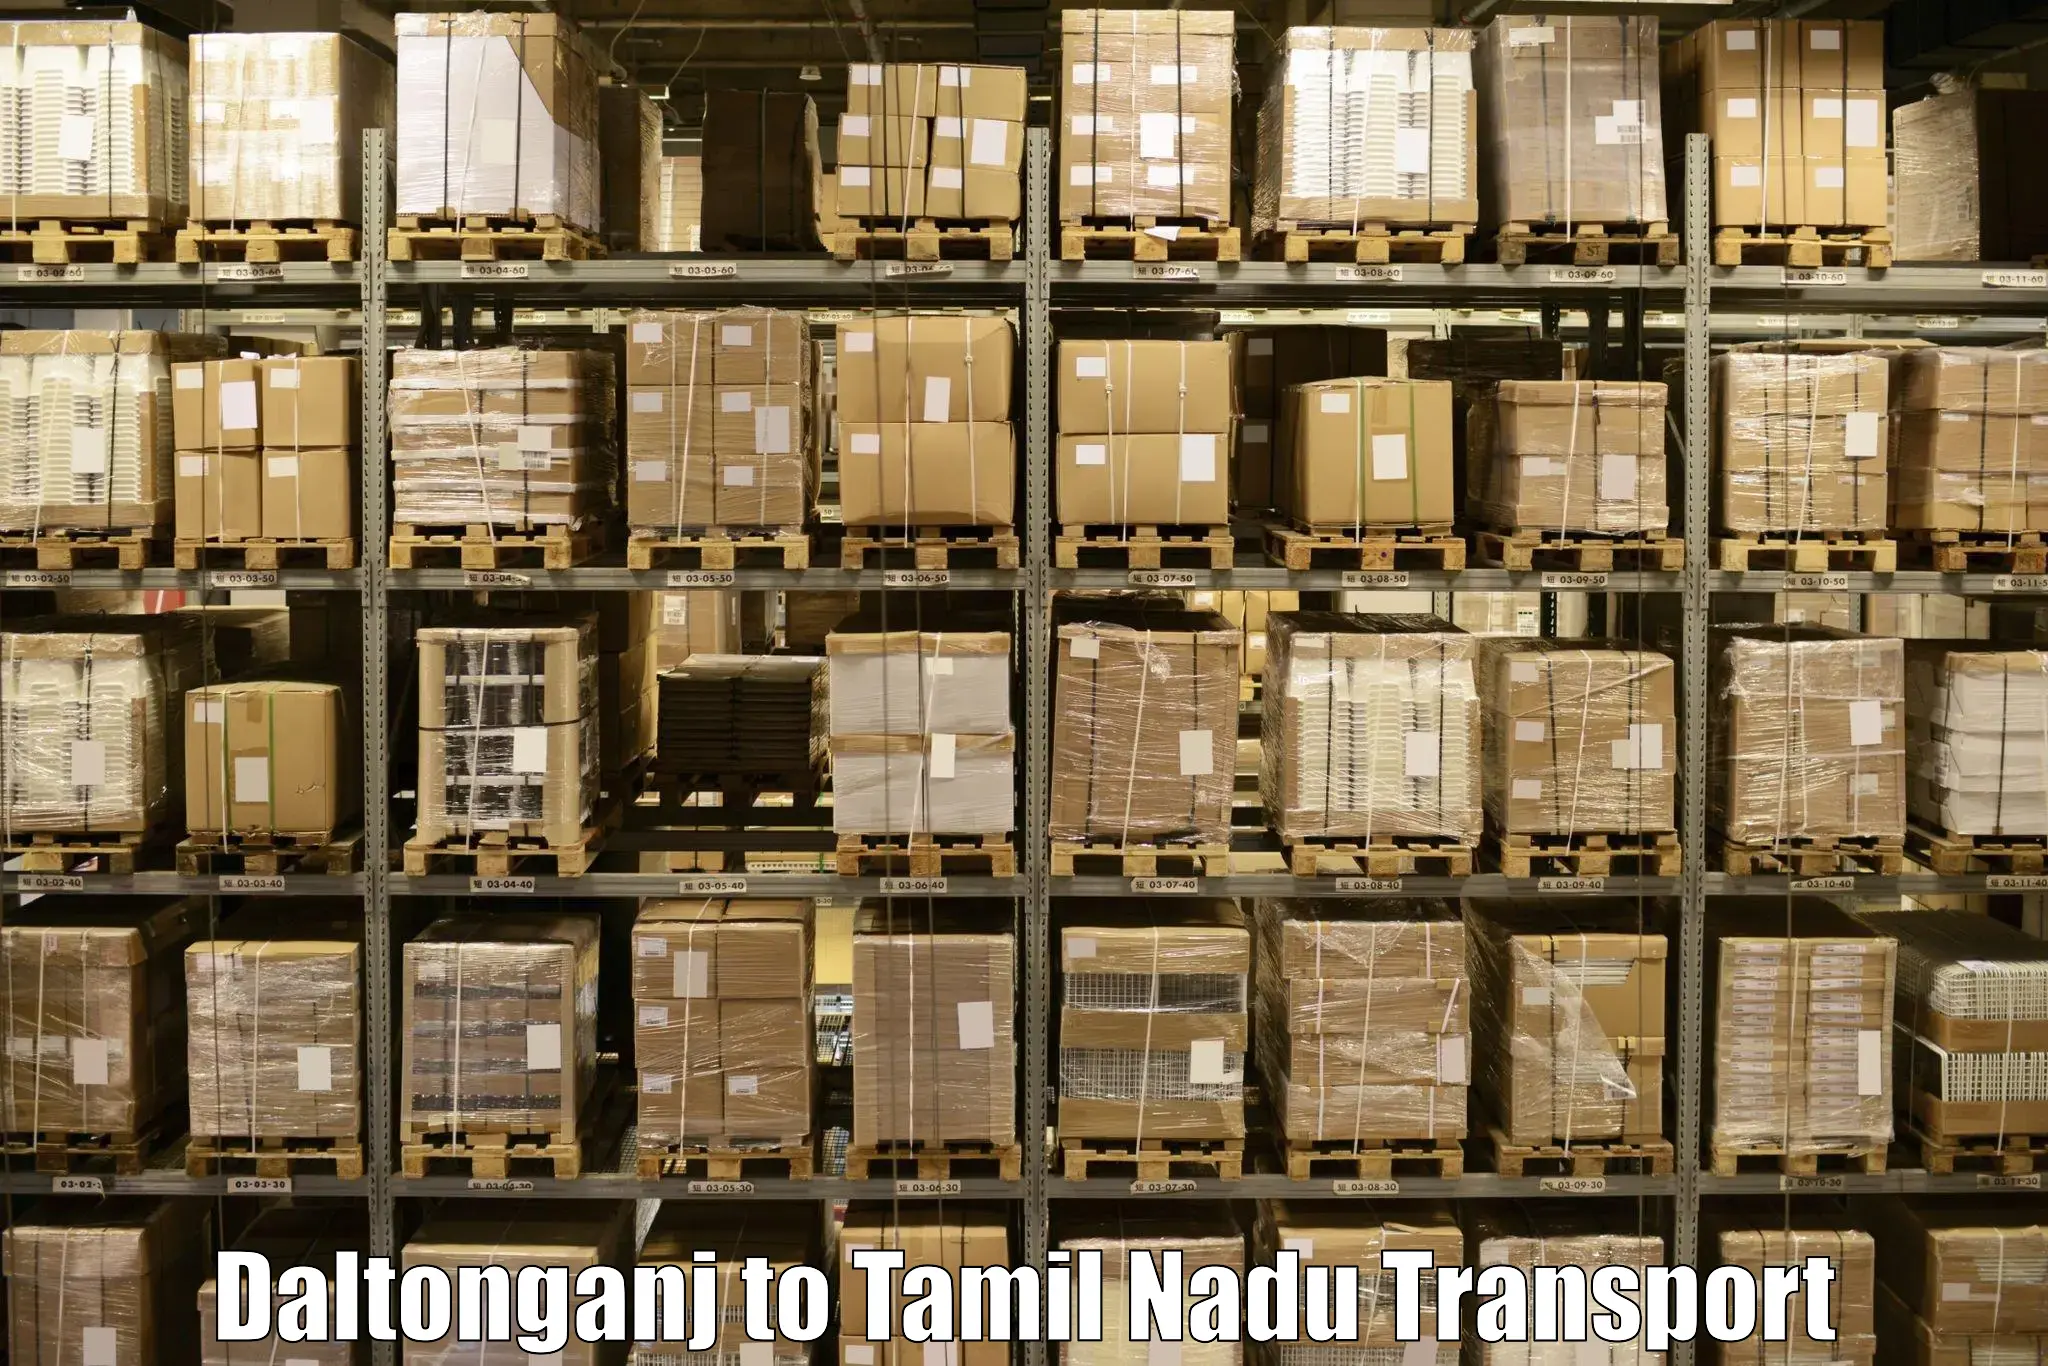 Commercial transport service in Daltonganj to Kanchipuram